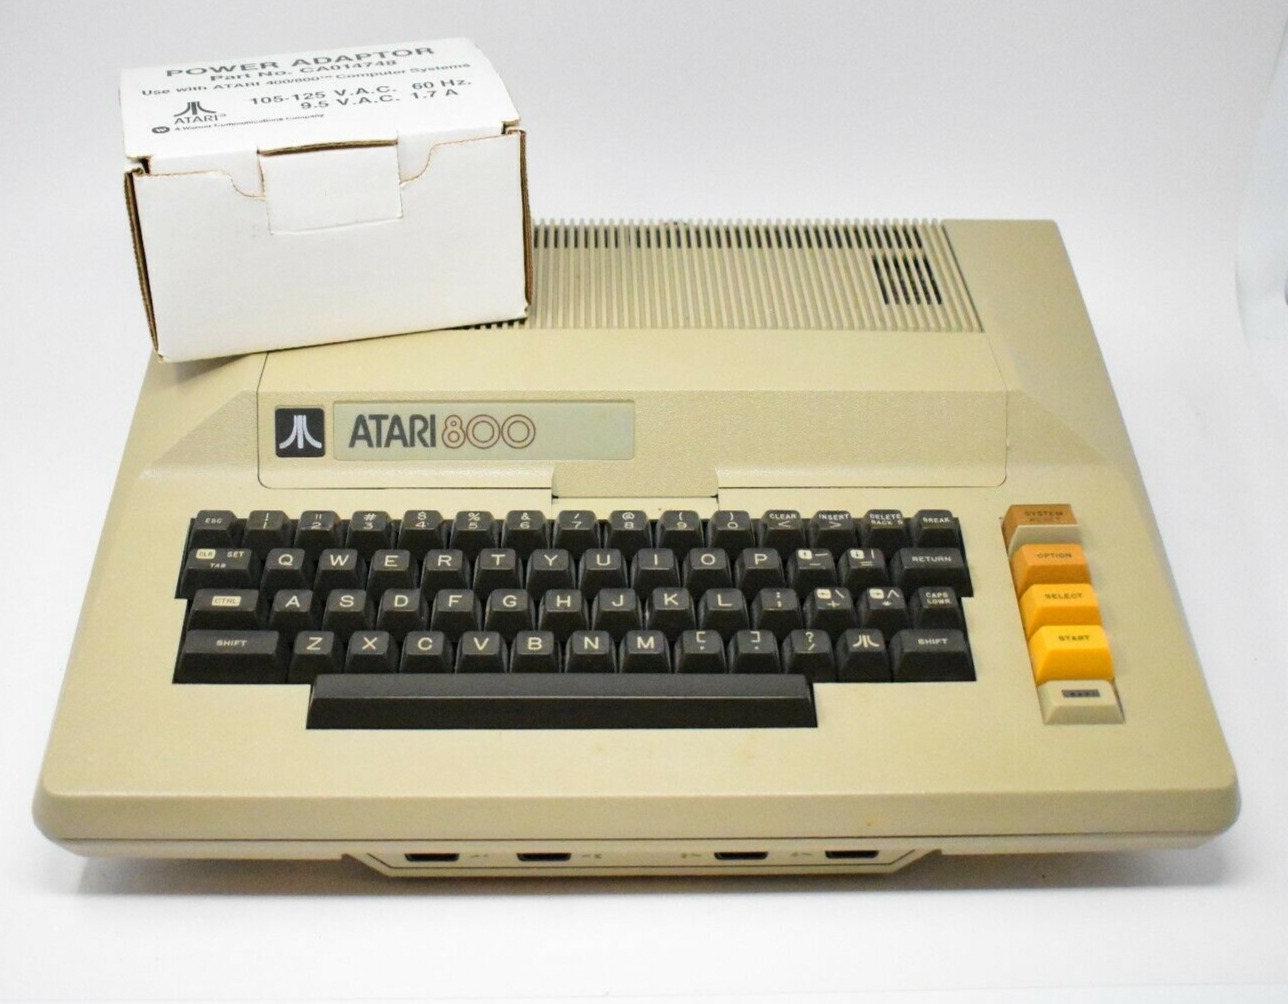 Atari 800 Computer in Original Box with Power Pack